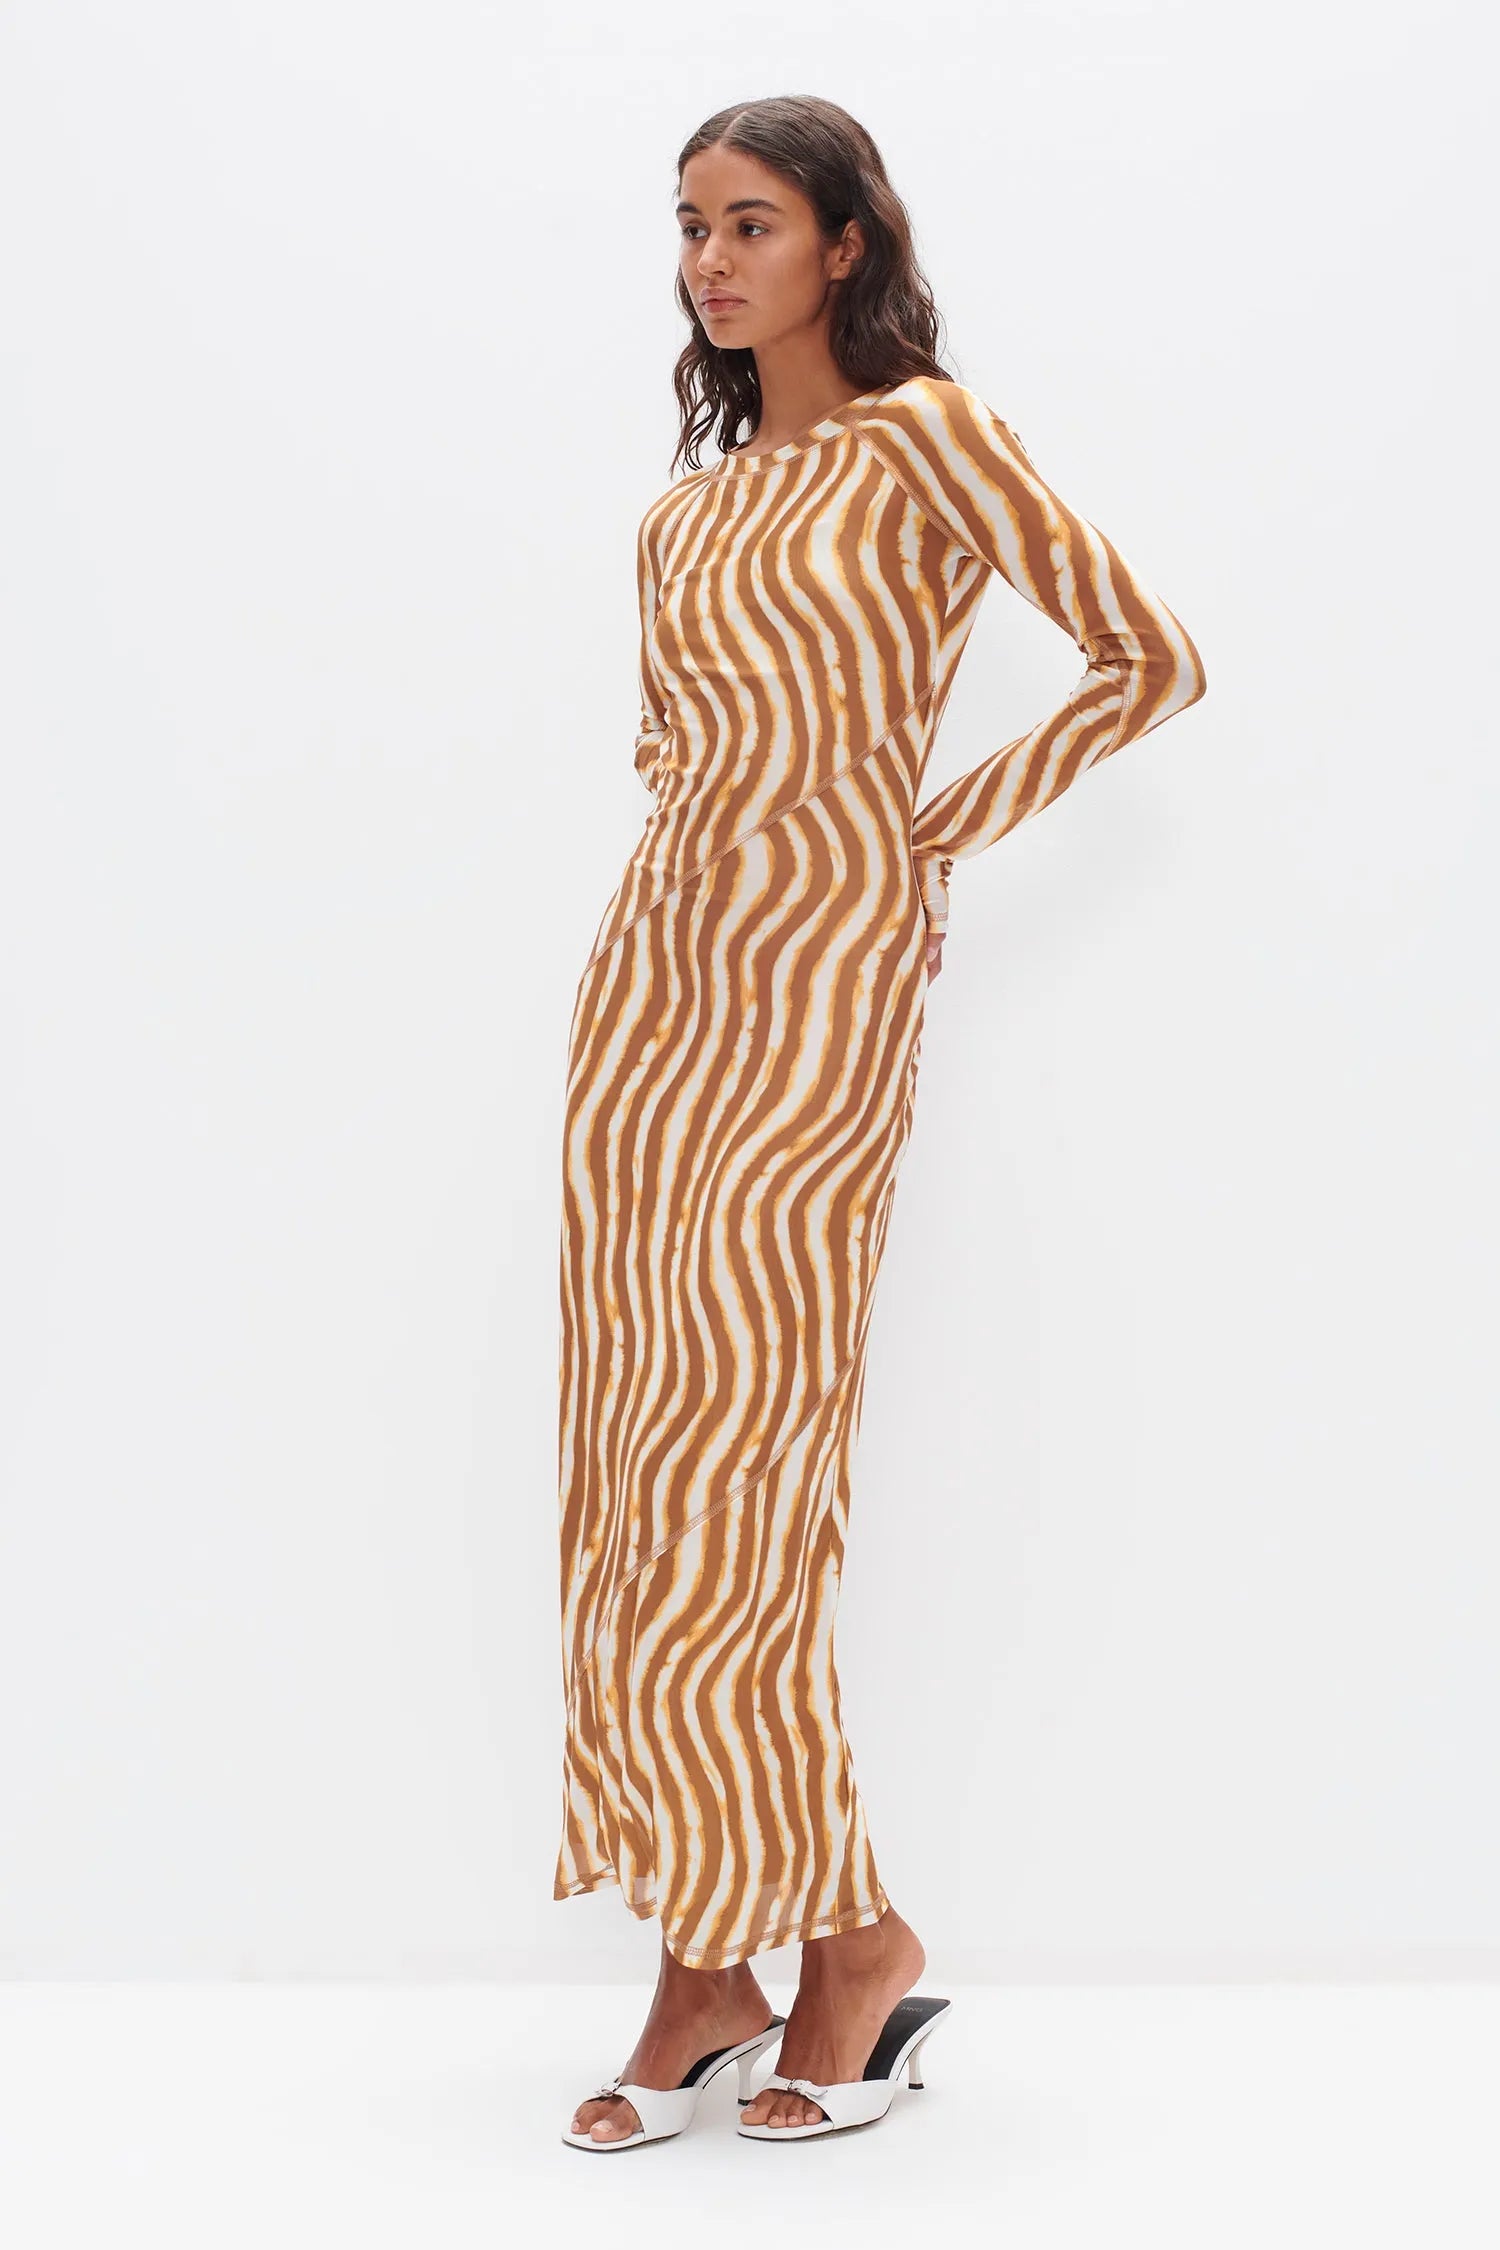 Ownley | Carla Long Sleeve Dress - Tie Dye Stripe